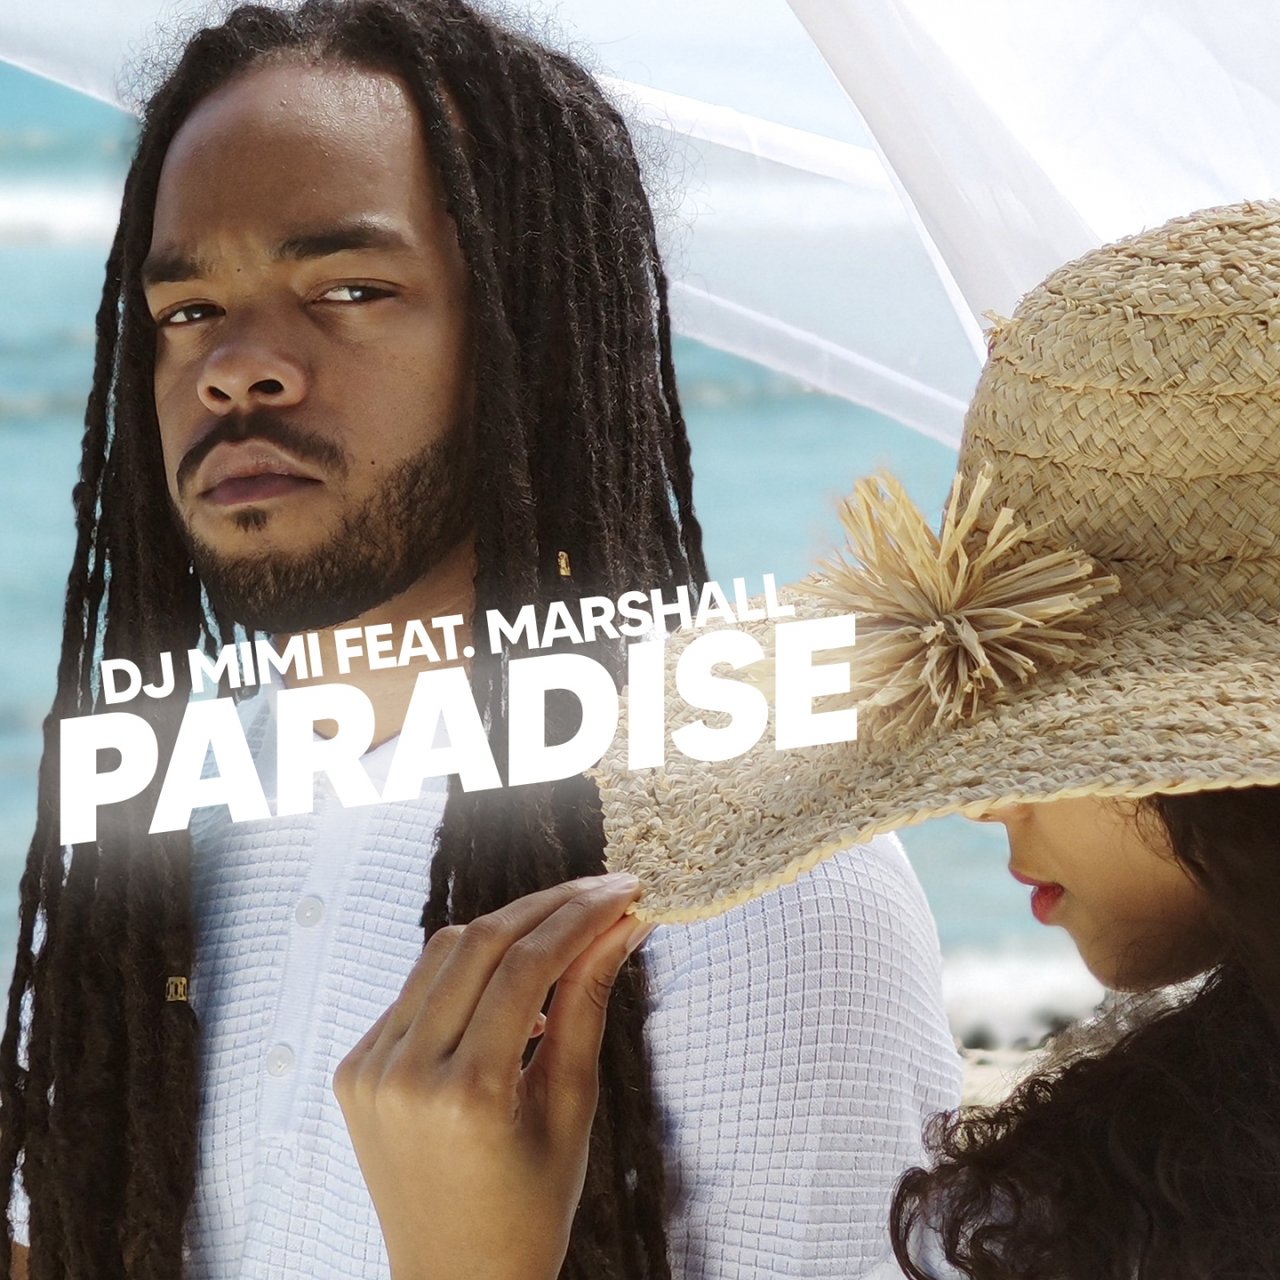 DJ Mimi - Paradise (ft. Marshall) (Cover)